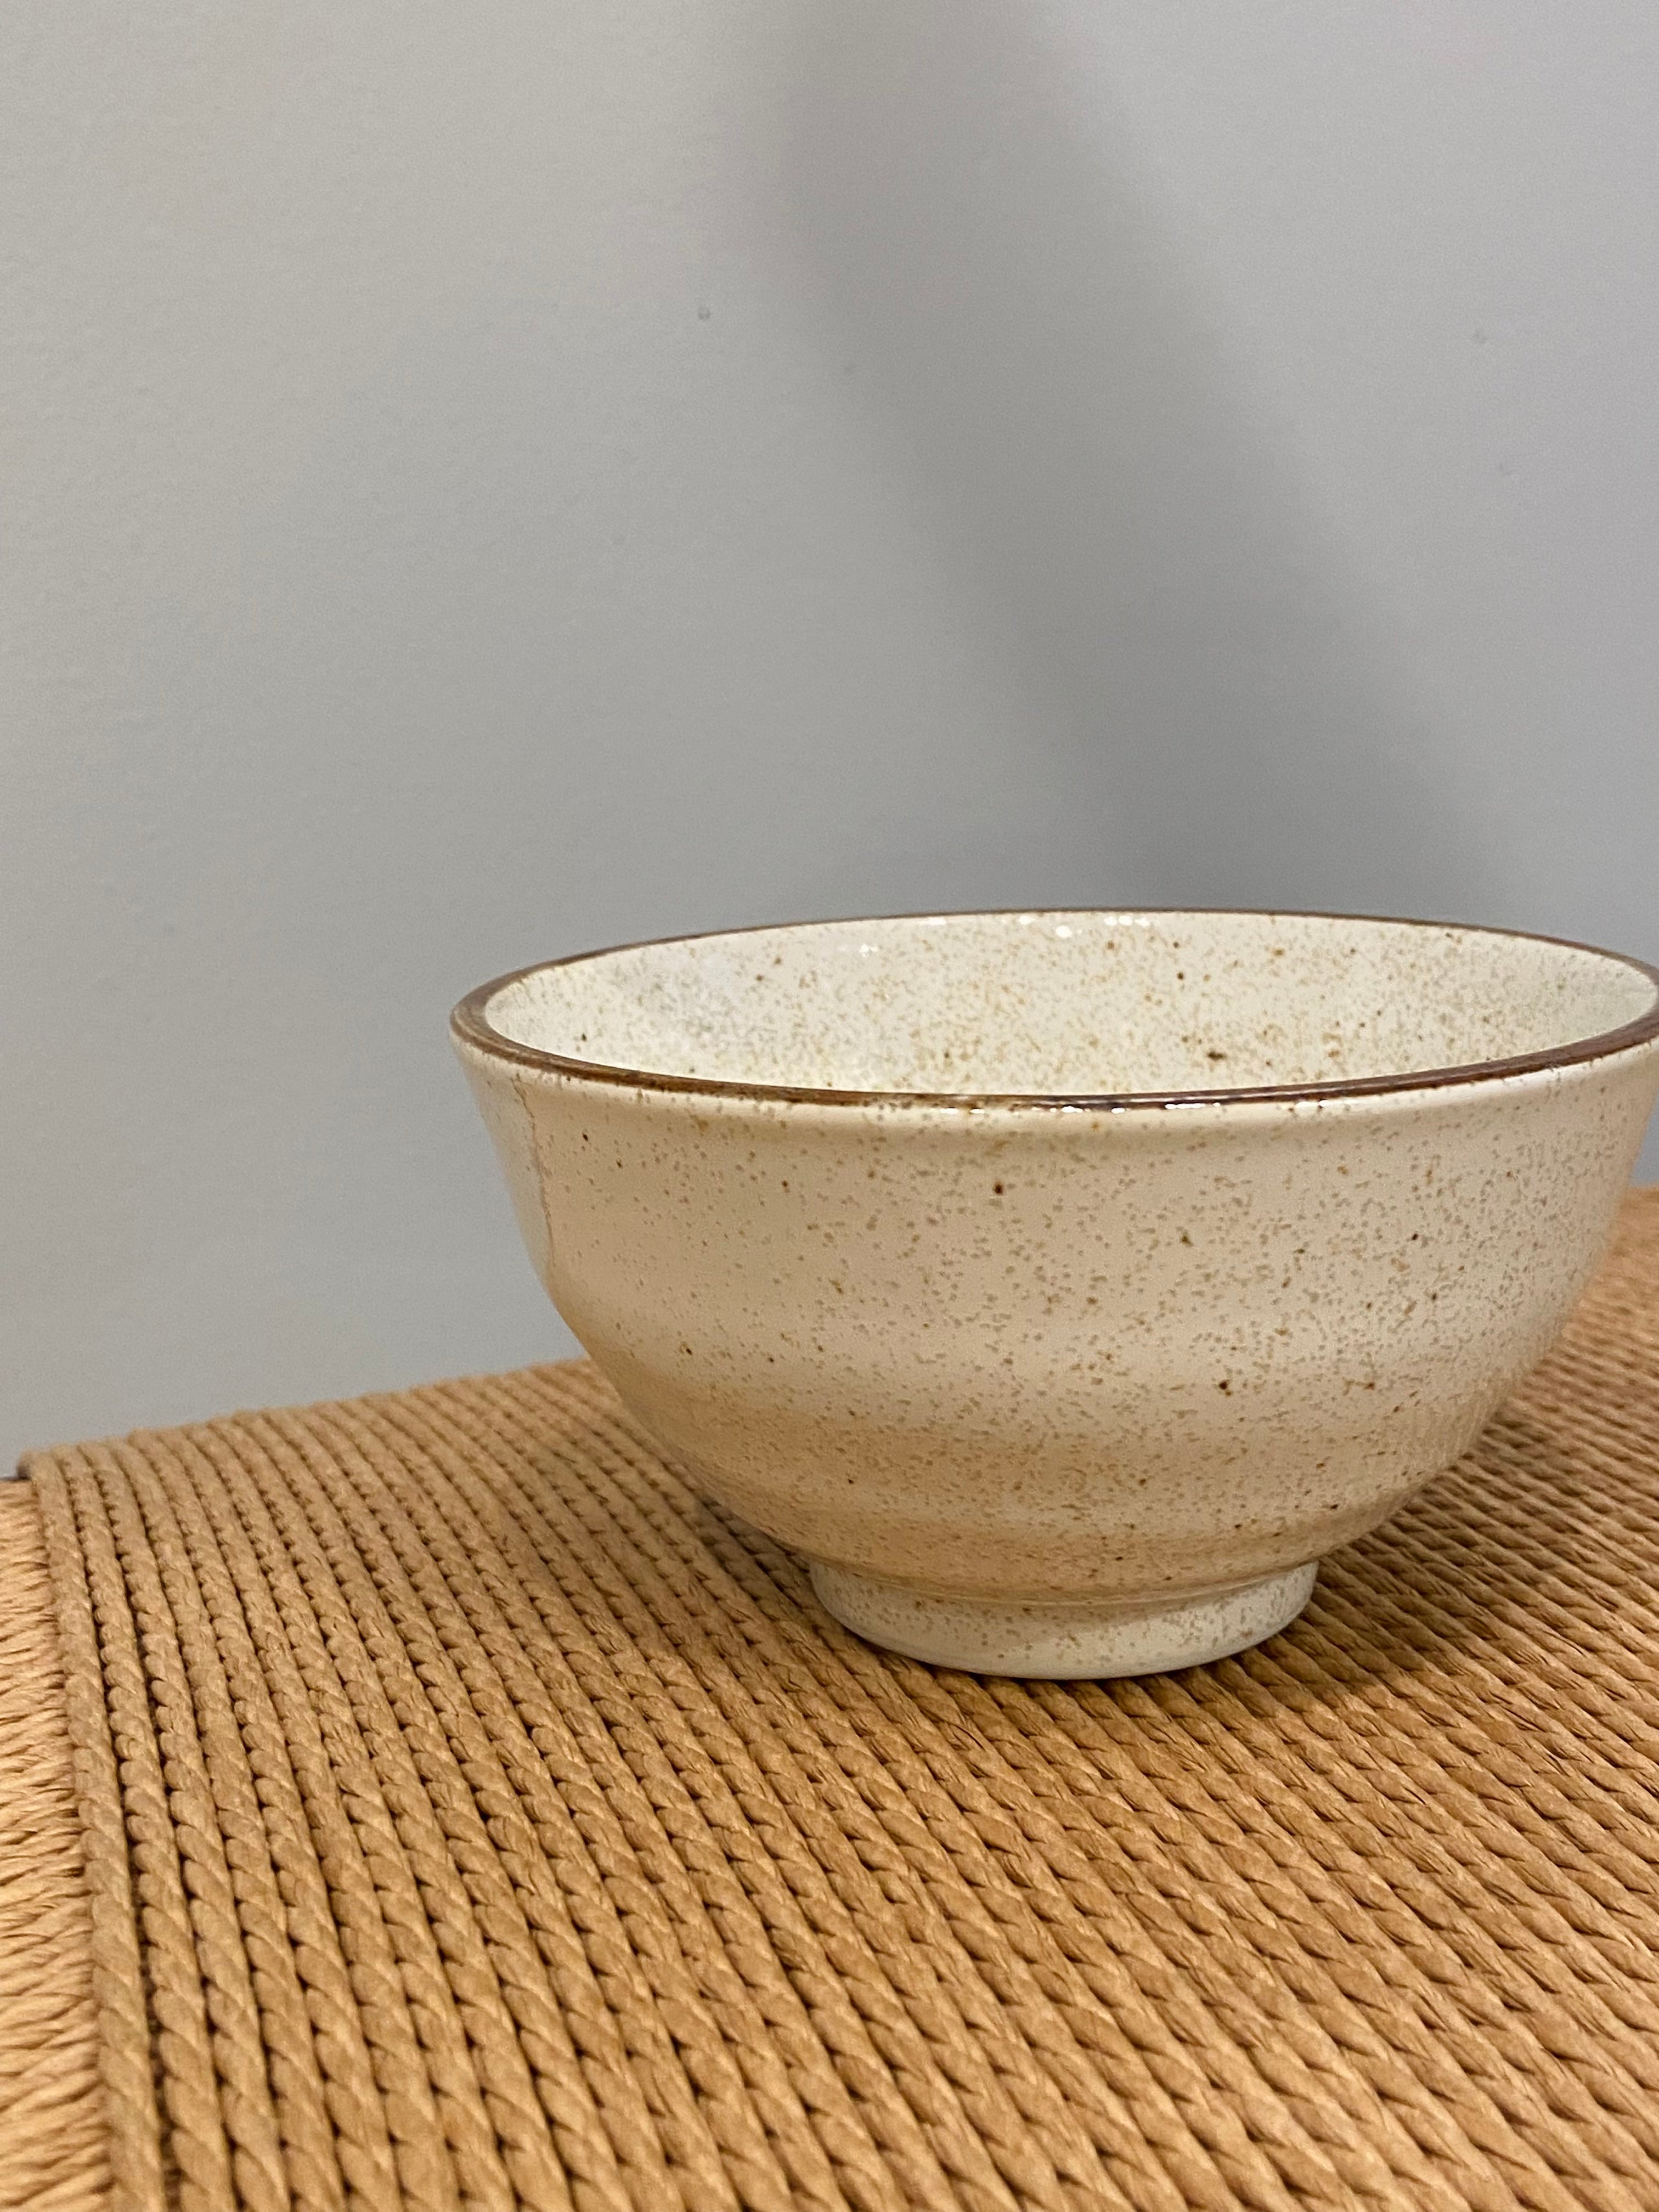 Cream colored ceramic bowl